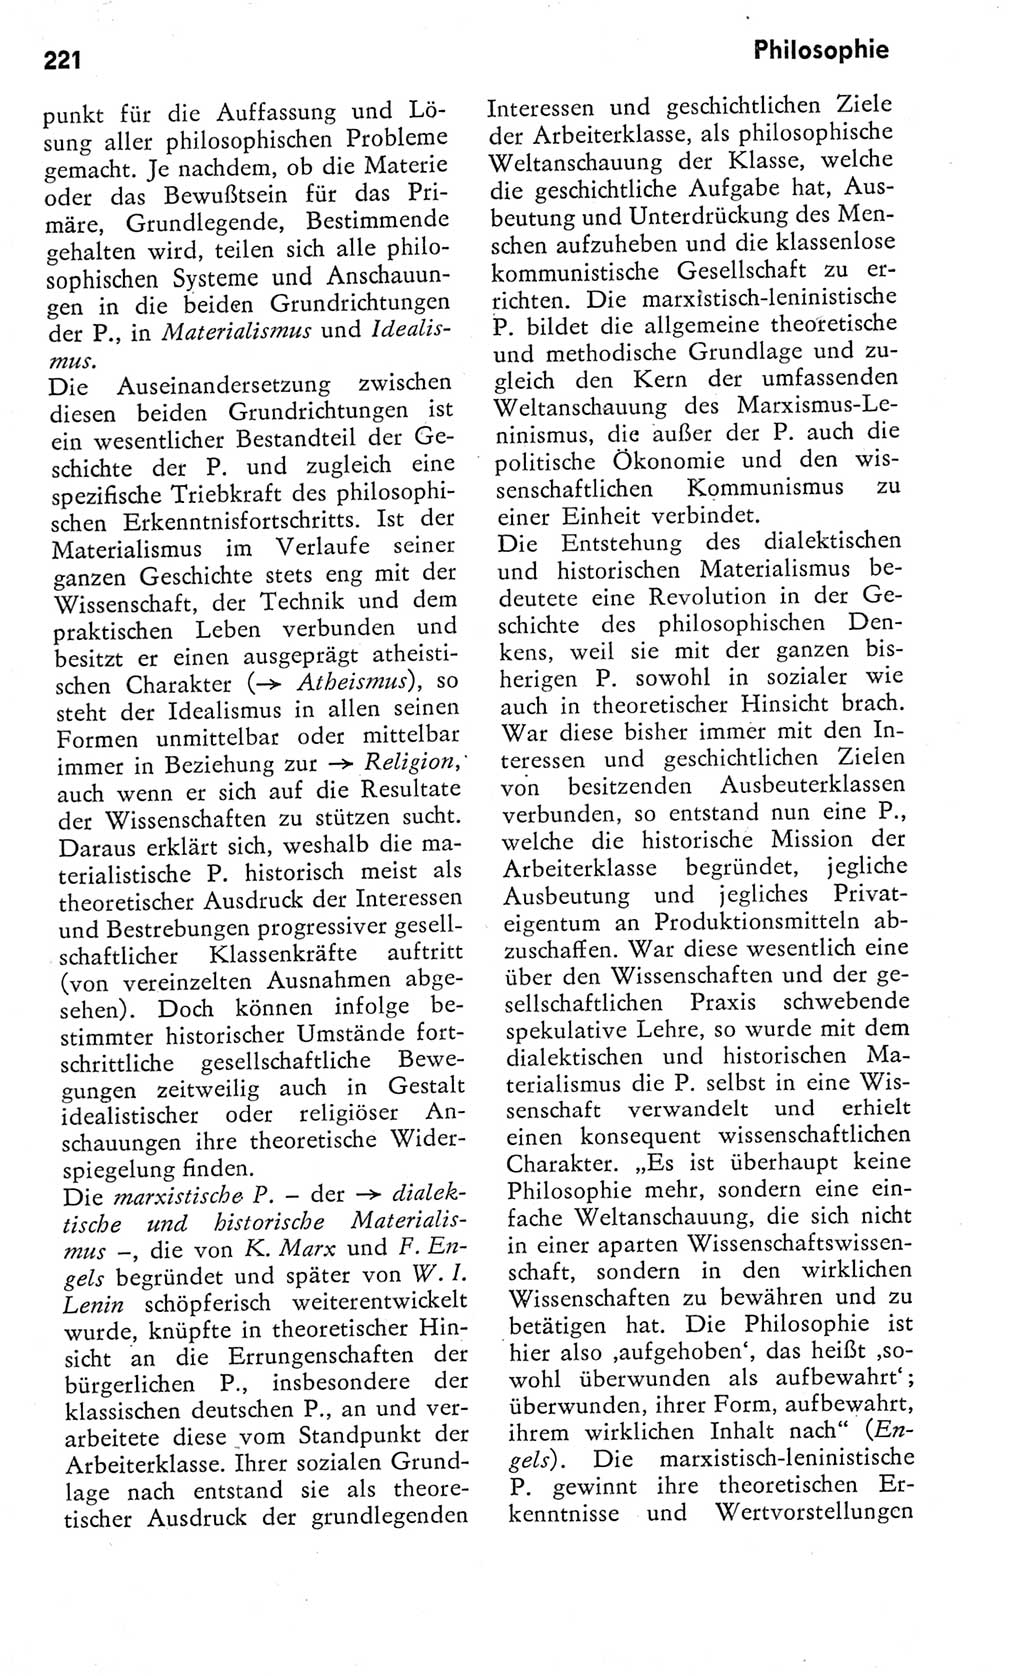 Kleines Wörterbuch der marxistisch-leninistischen Philosophie [Deutsche Demokratische Republik (DDR)] 1975, Seite 221 (Kl. Wb. ML Phil. DDR 1975, S. 221)